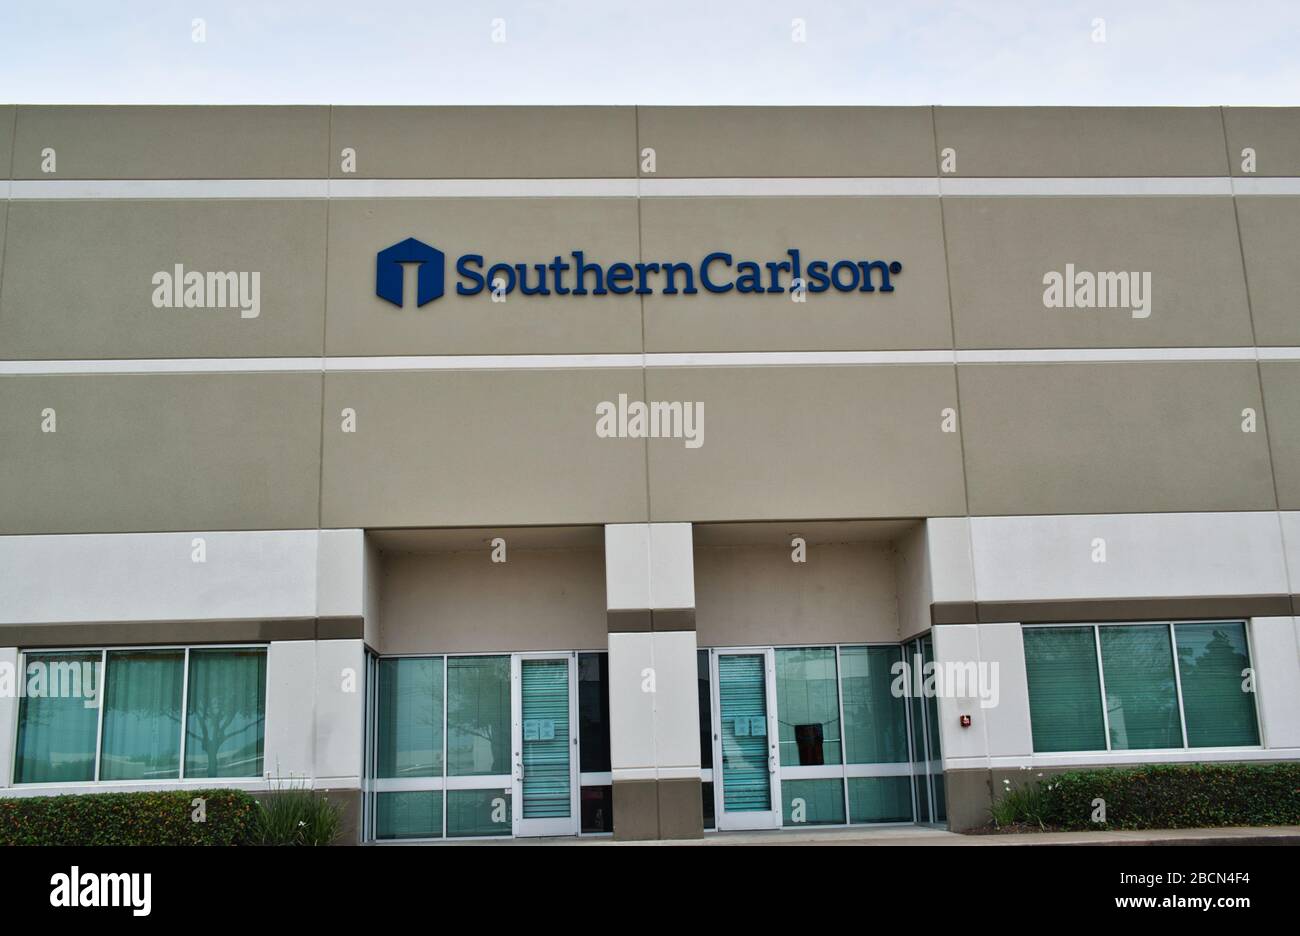 Im südlichen Carlson Bürogebäude in Houston, TX. Werkzeug- und Liefervertrieb in Omaha 1947 gegründet und über 150 Standorte bedient Stockfoto